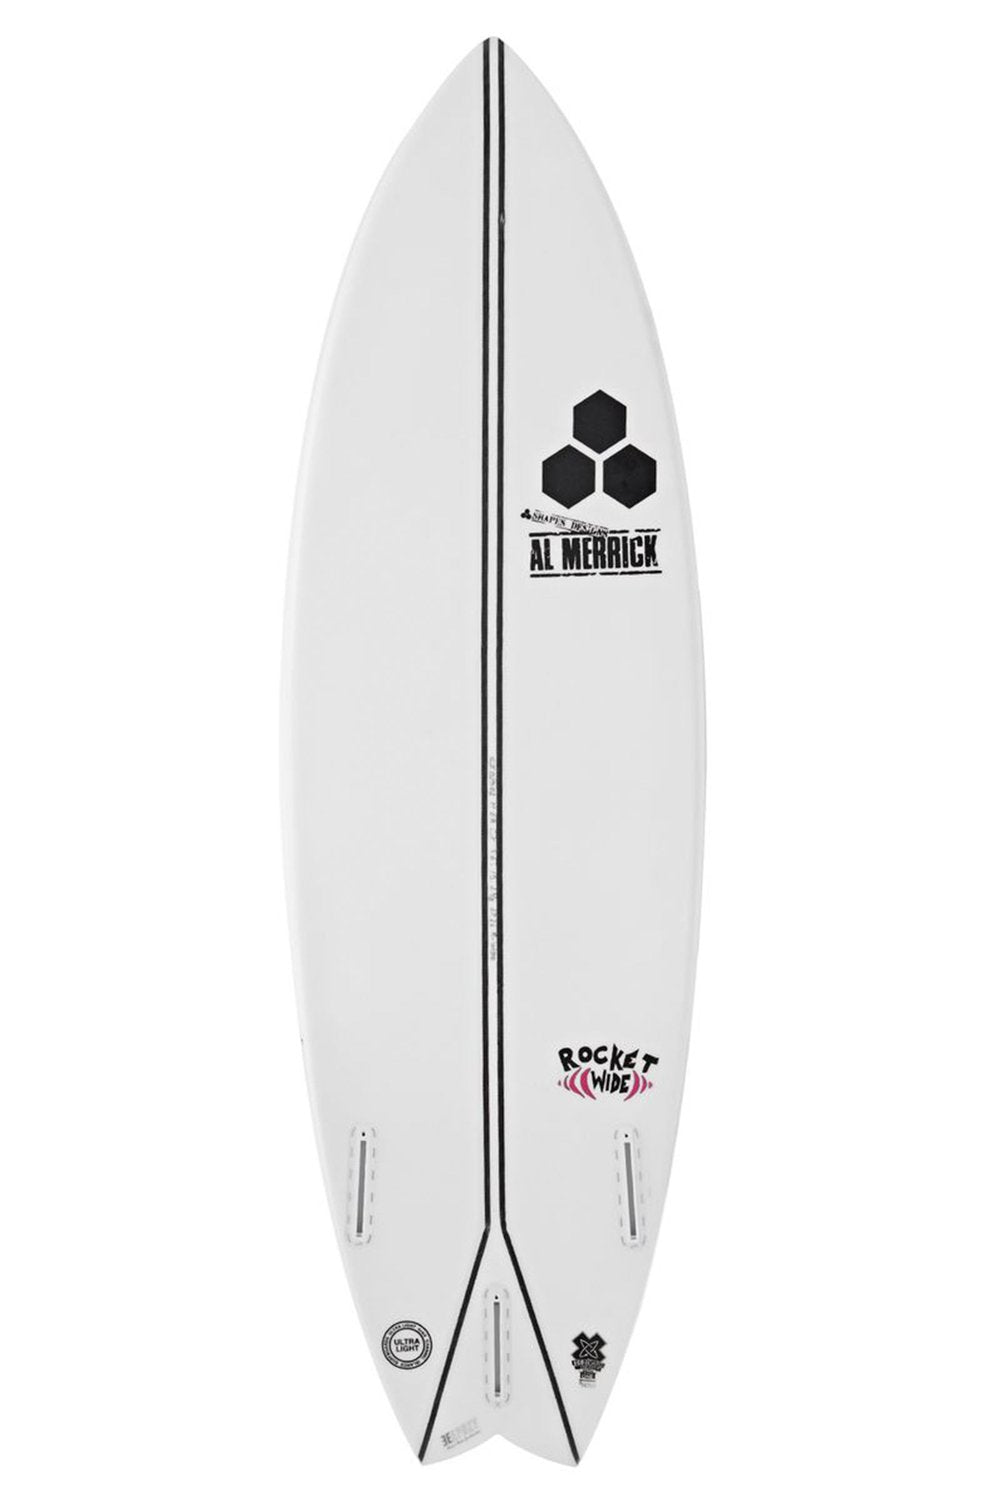 Channel Islands Rocket Wide Spine-Tek Surfboard